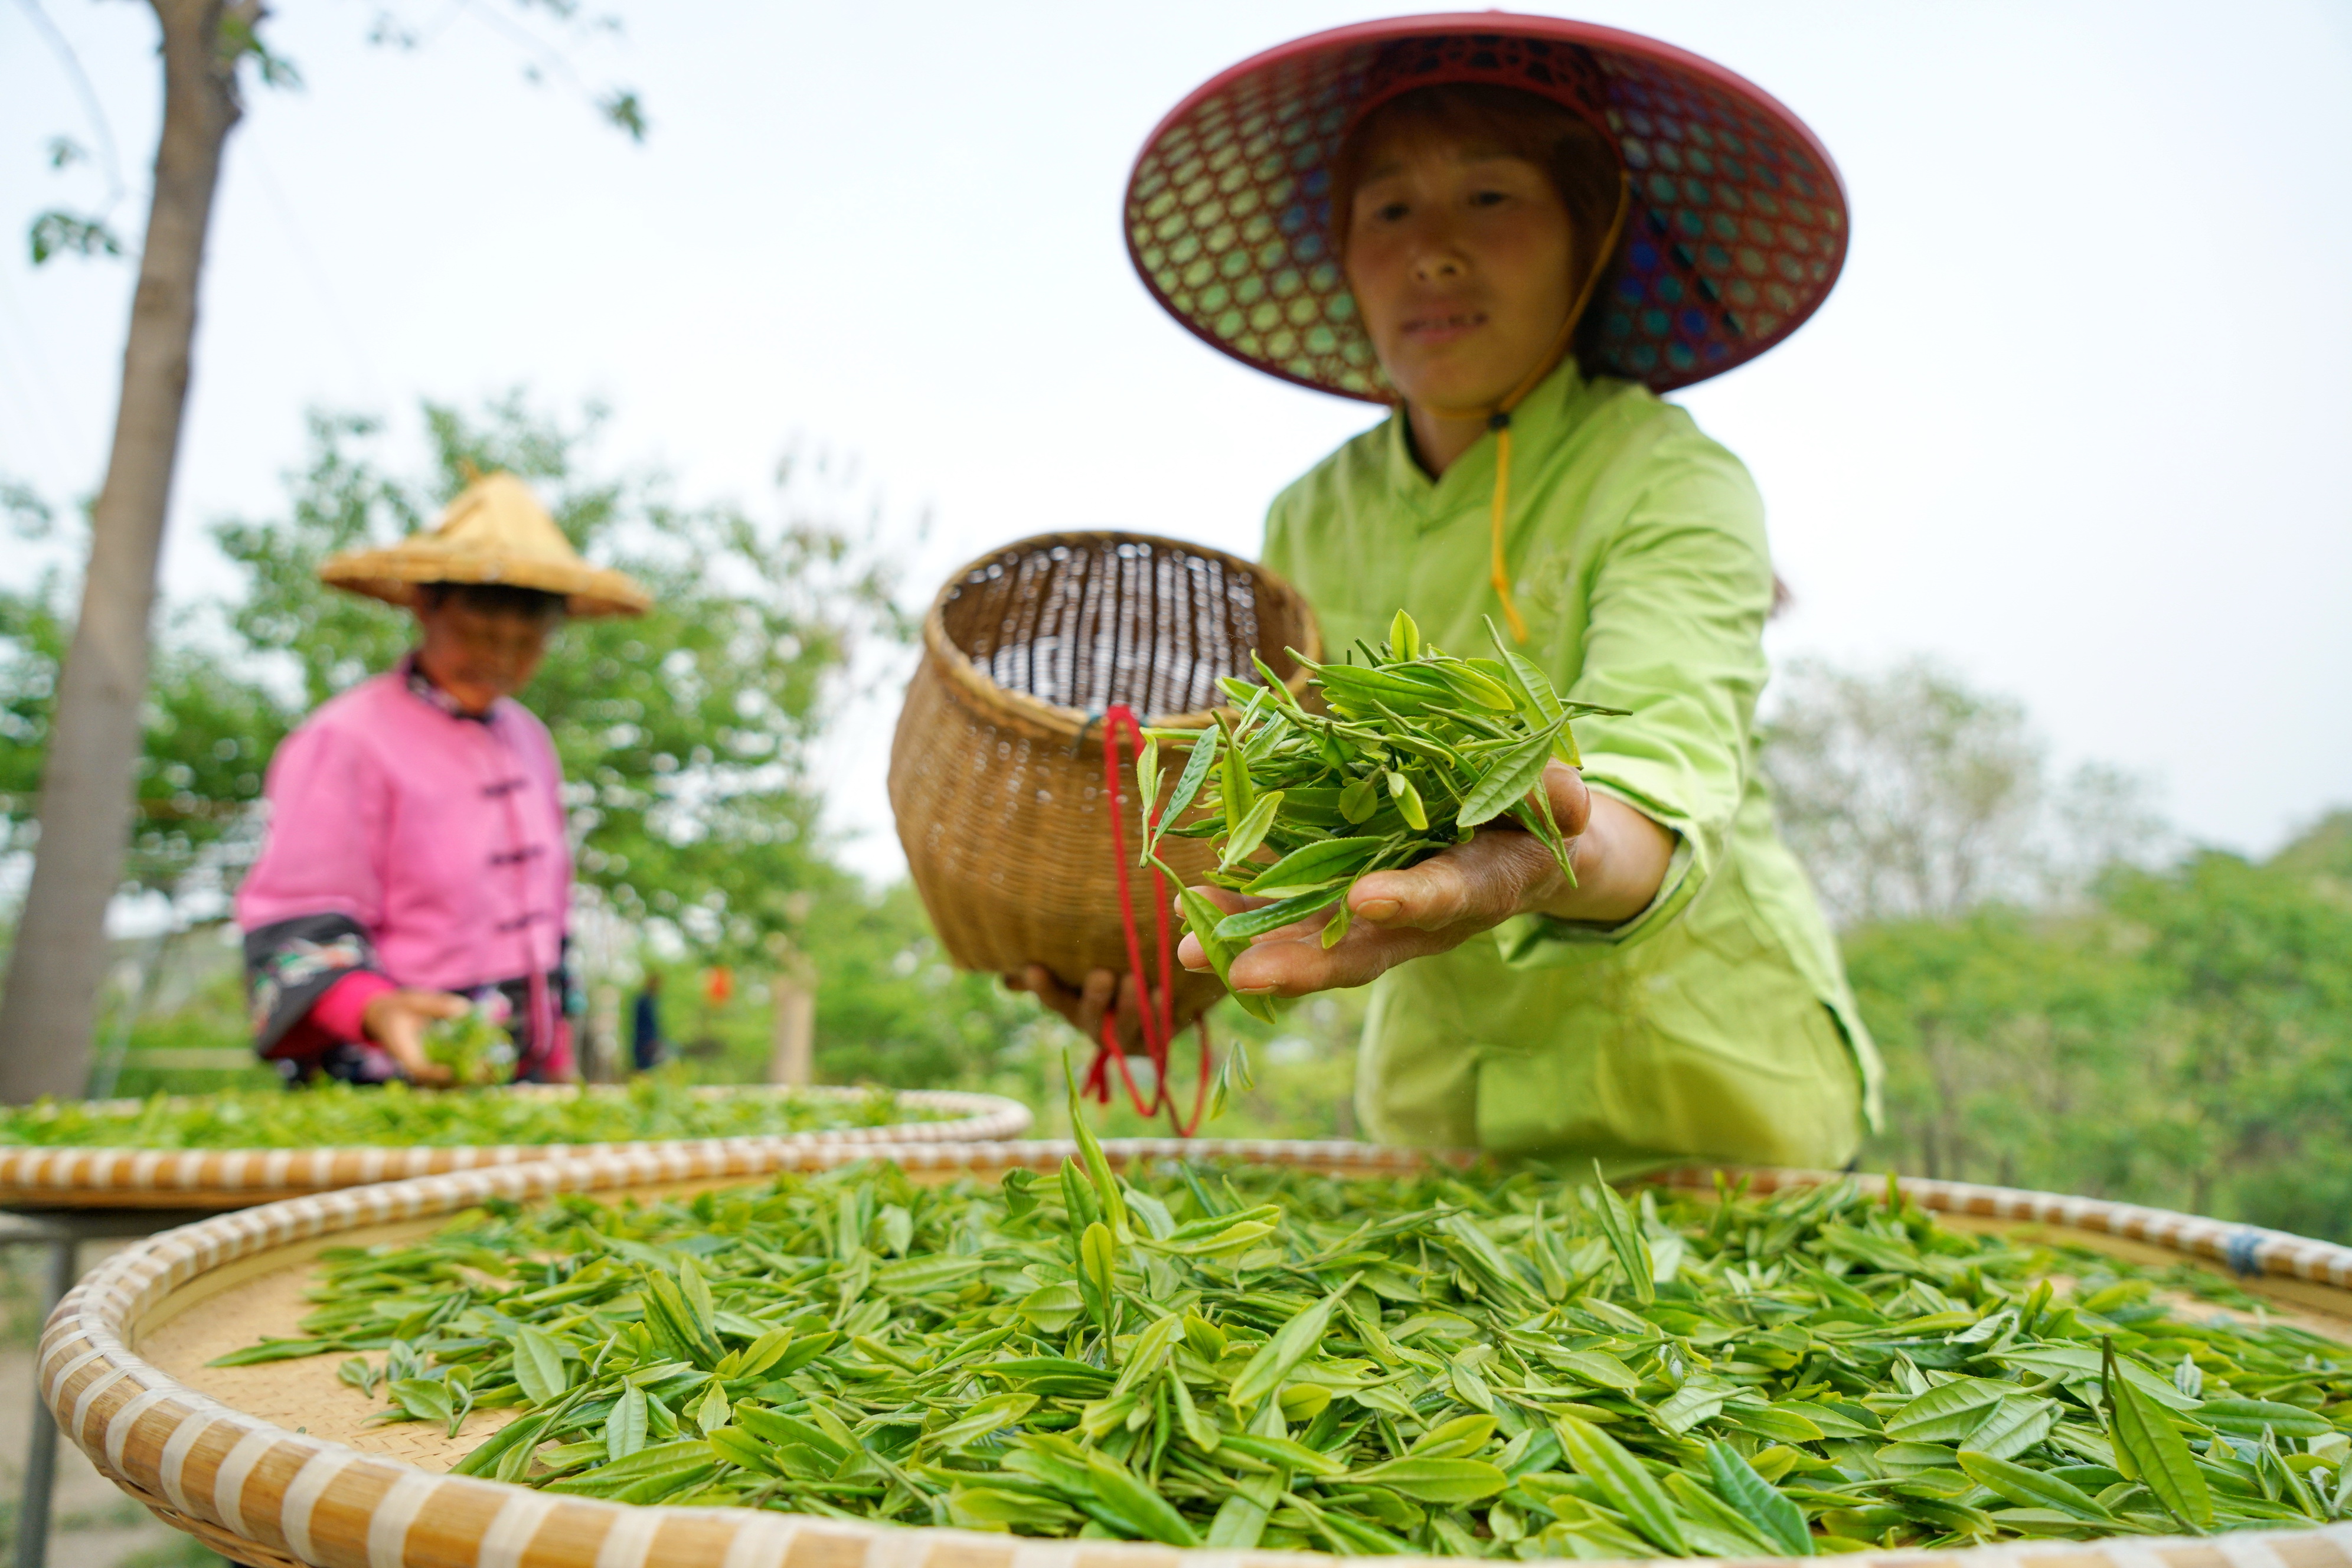 5月7日,临城县东篱茶园的工人将采摘的茶叶铺开,准备晾晒